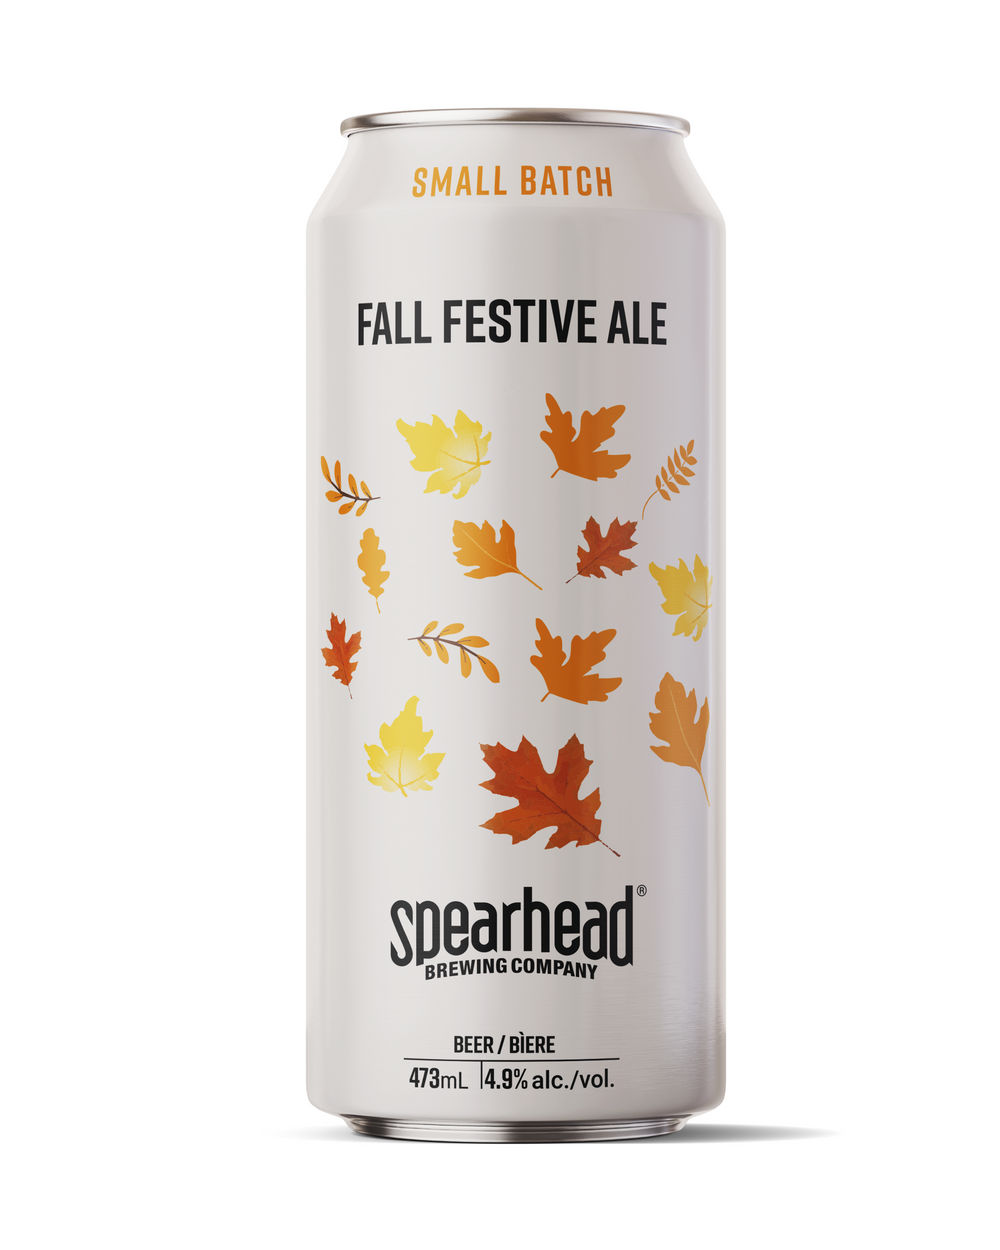 Fall Festive Ale